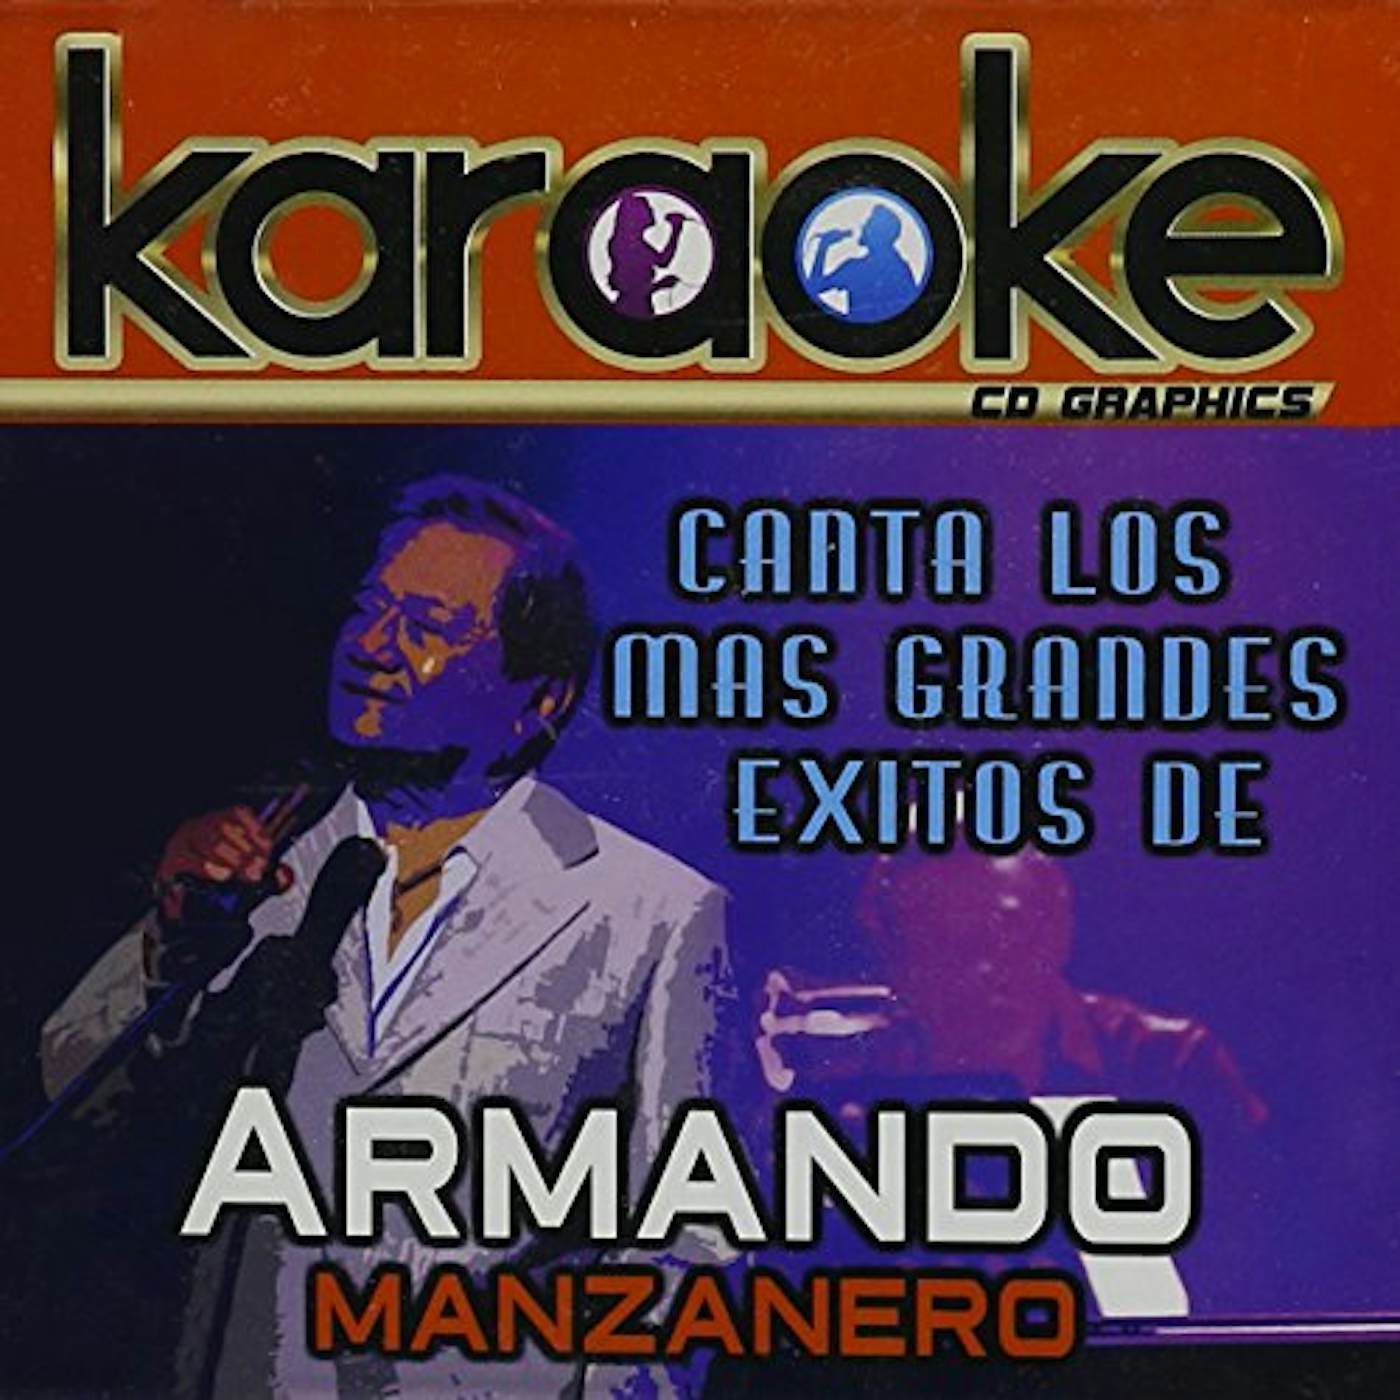 KARAOKE: CANTA COMO ARMANDO MANZANERO CD